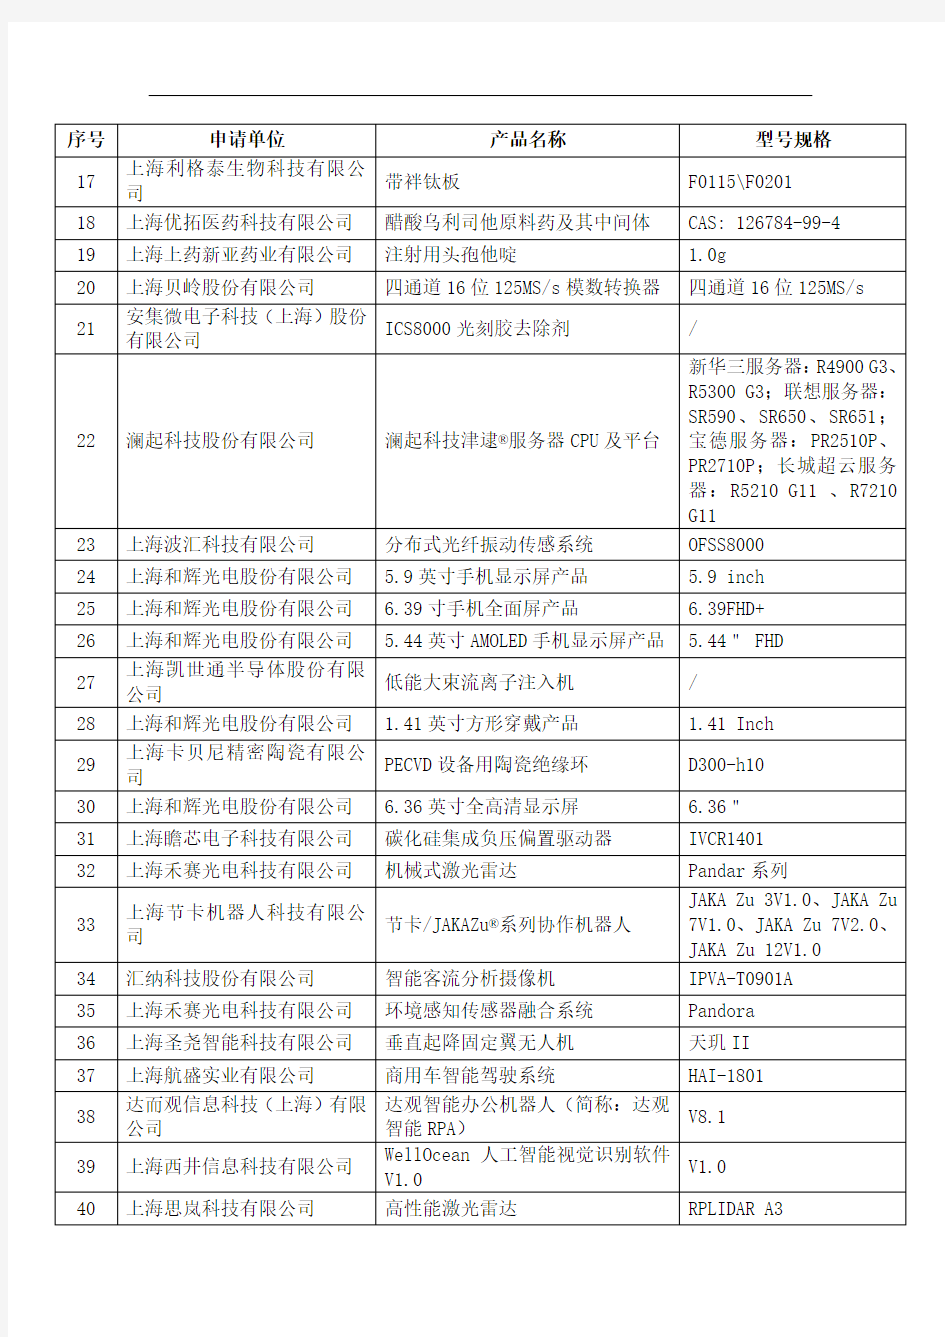 《2020年度上海市第二批创新产品推荐目录》(候选)名单